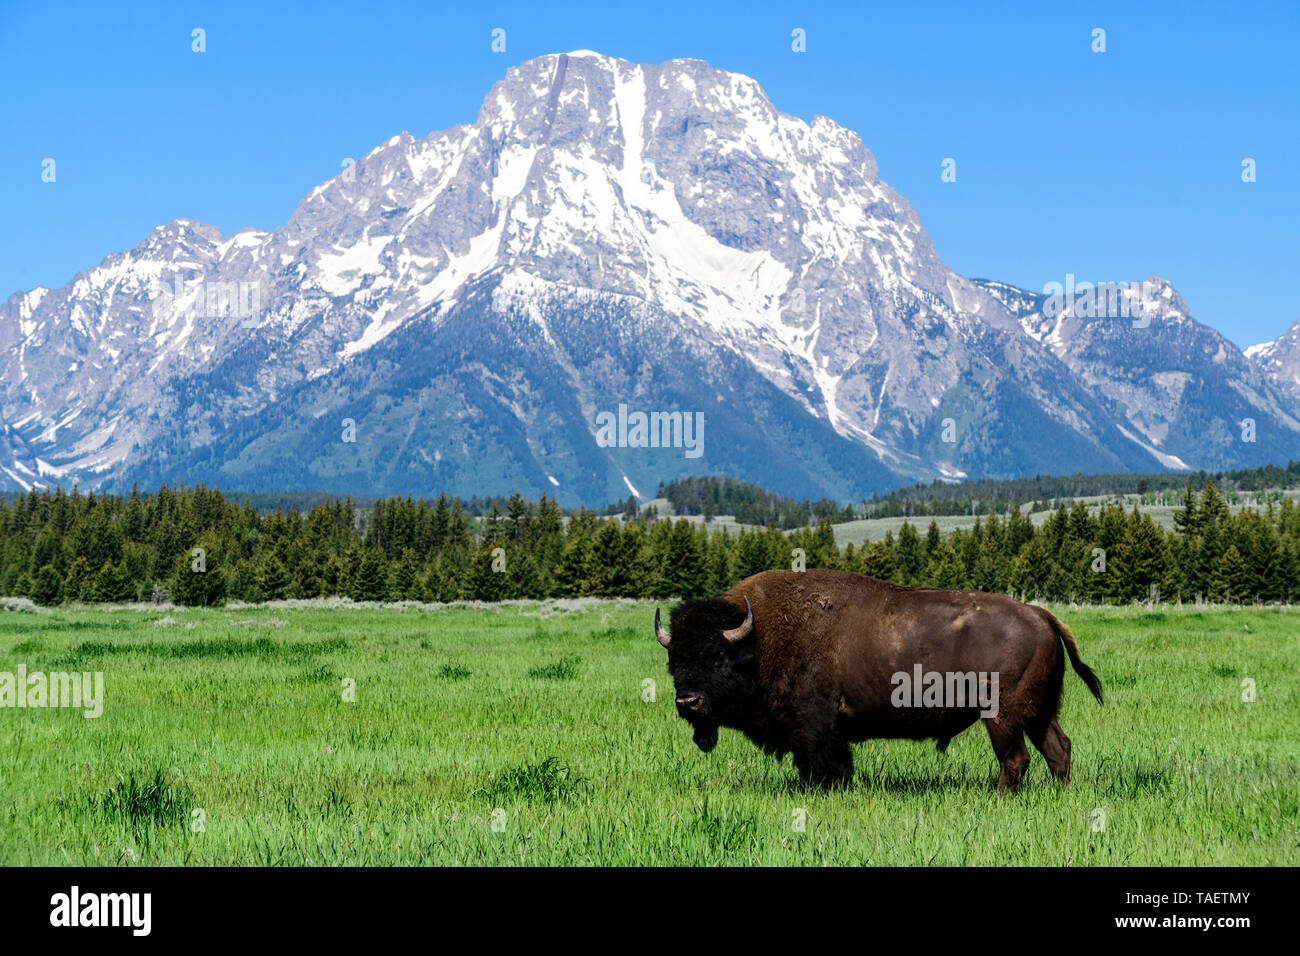 Un bison dans un champ avec Mt. Moran dans l'arrière-plan dans le Grand Teton National Park près de Jackson Hole, Wyoming USA. Banque D'Images